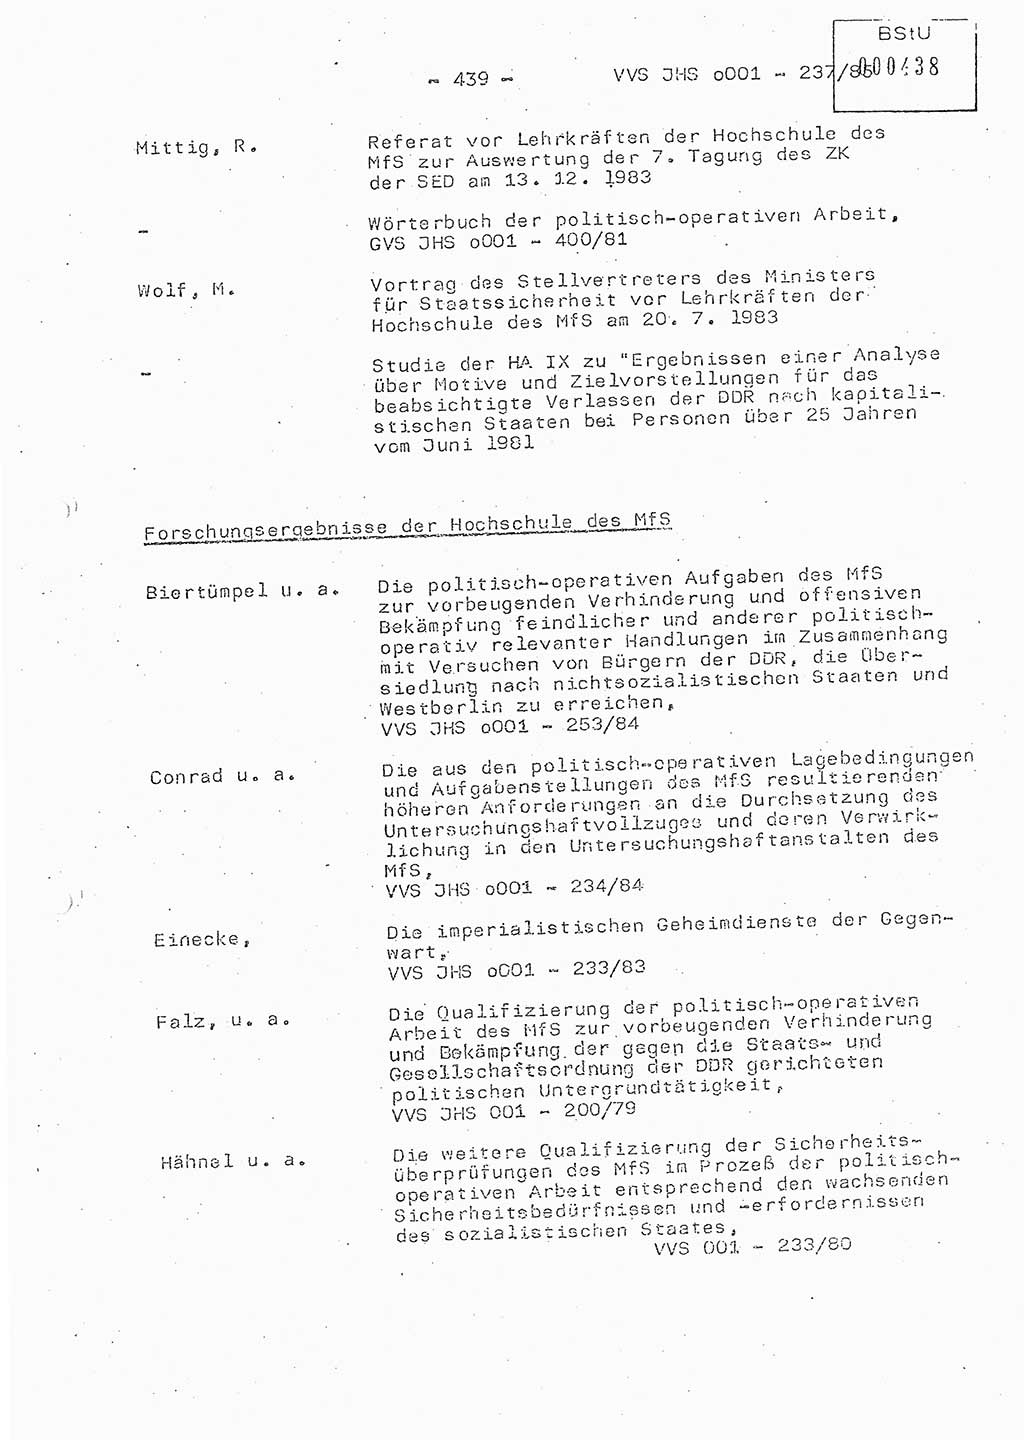 Dissertation Oberstleutnant Peter Jakulski (JHS), Oberstleutnat Christian Rudolph (HA Ⅸ), Major Horst Böttger (ZMD), Major Wolfgang Grüneberg (JHS), Major Albert Meutsch (JHS), Ministerium für Staatssicherheit (MfS) [Deutsche Demokratische Republik (DDR)], Juristische Hochschule (JHS), Vertrauliche Verschlußsache (VVS) o001-237/85, Potsdam 1985, Seite 439 (Diss. MfS DDR JHS VVS o001-237/85 1985, S. 439)